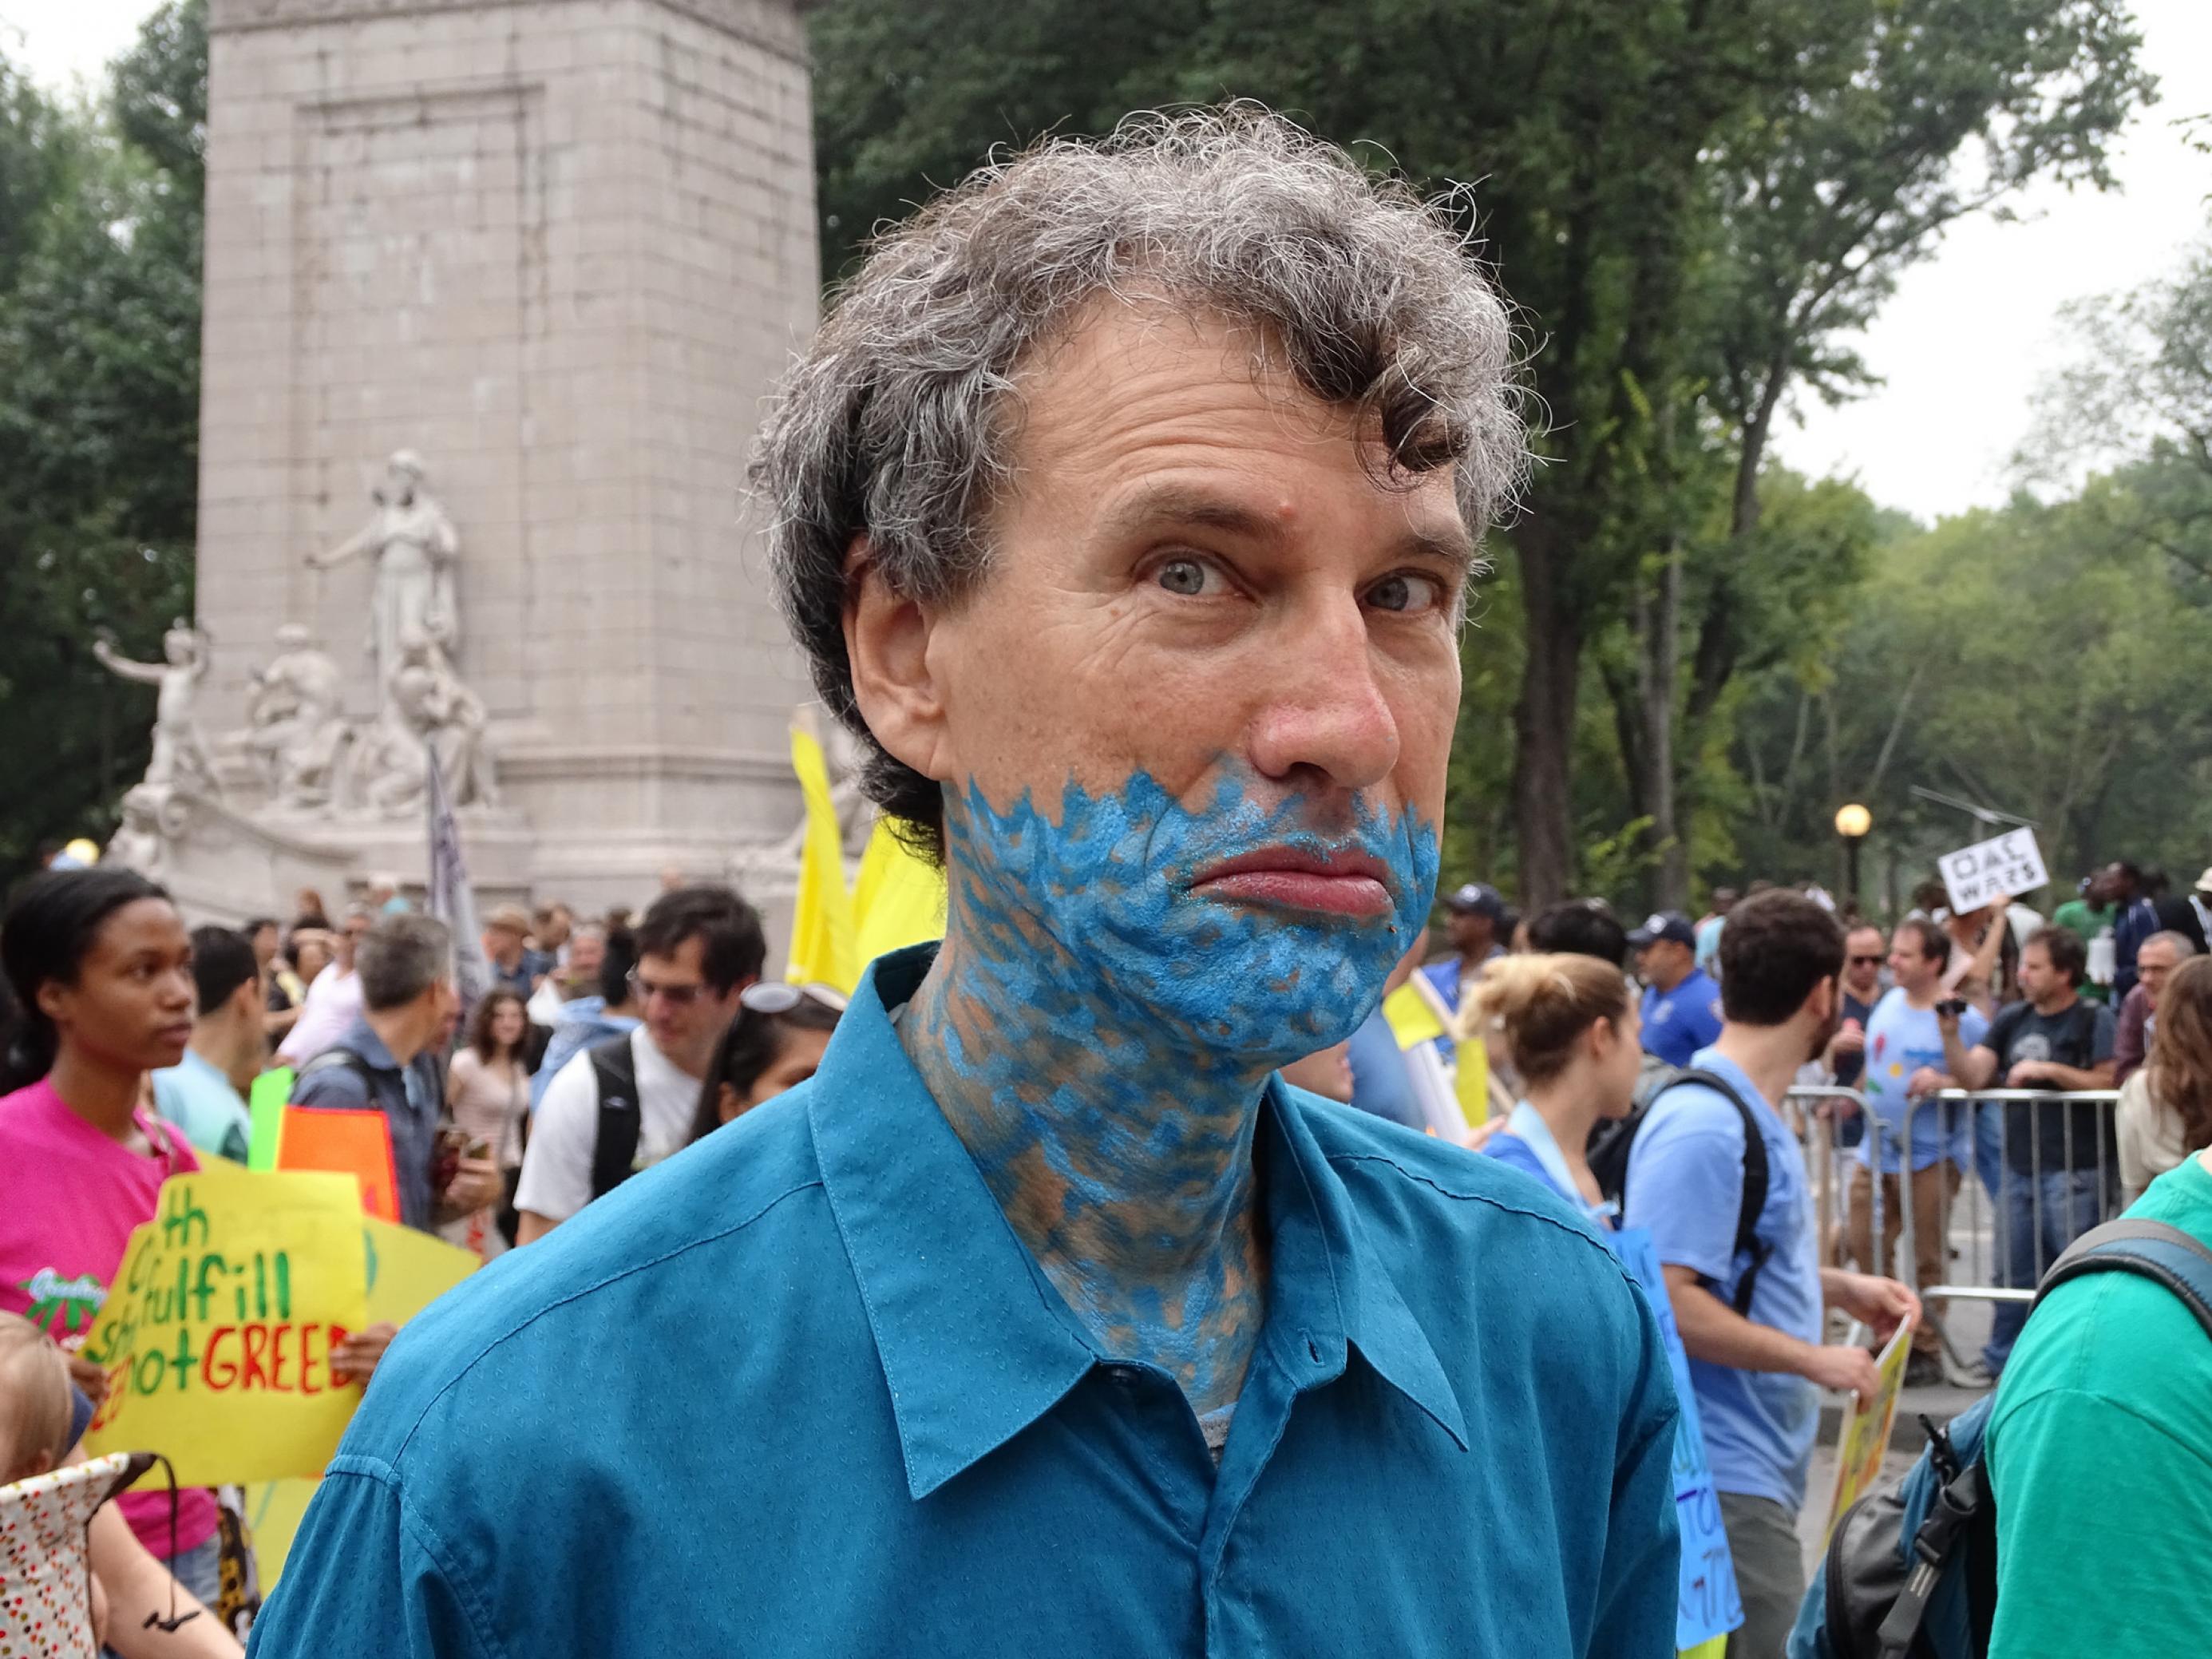 Blaue Striche am Hals symbolisieren Wellen: Das Makeup sagt, das Wasser steht ihm nicht nur bis zum Hals, sondern schon bis zur Oberlippe. Der Blick unterstreicht die Botschaft. Ein Demonstrant beim Peoples Climate March 2014.